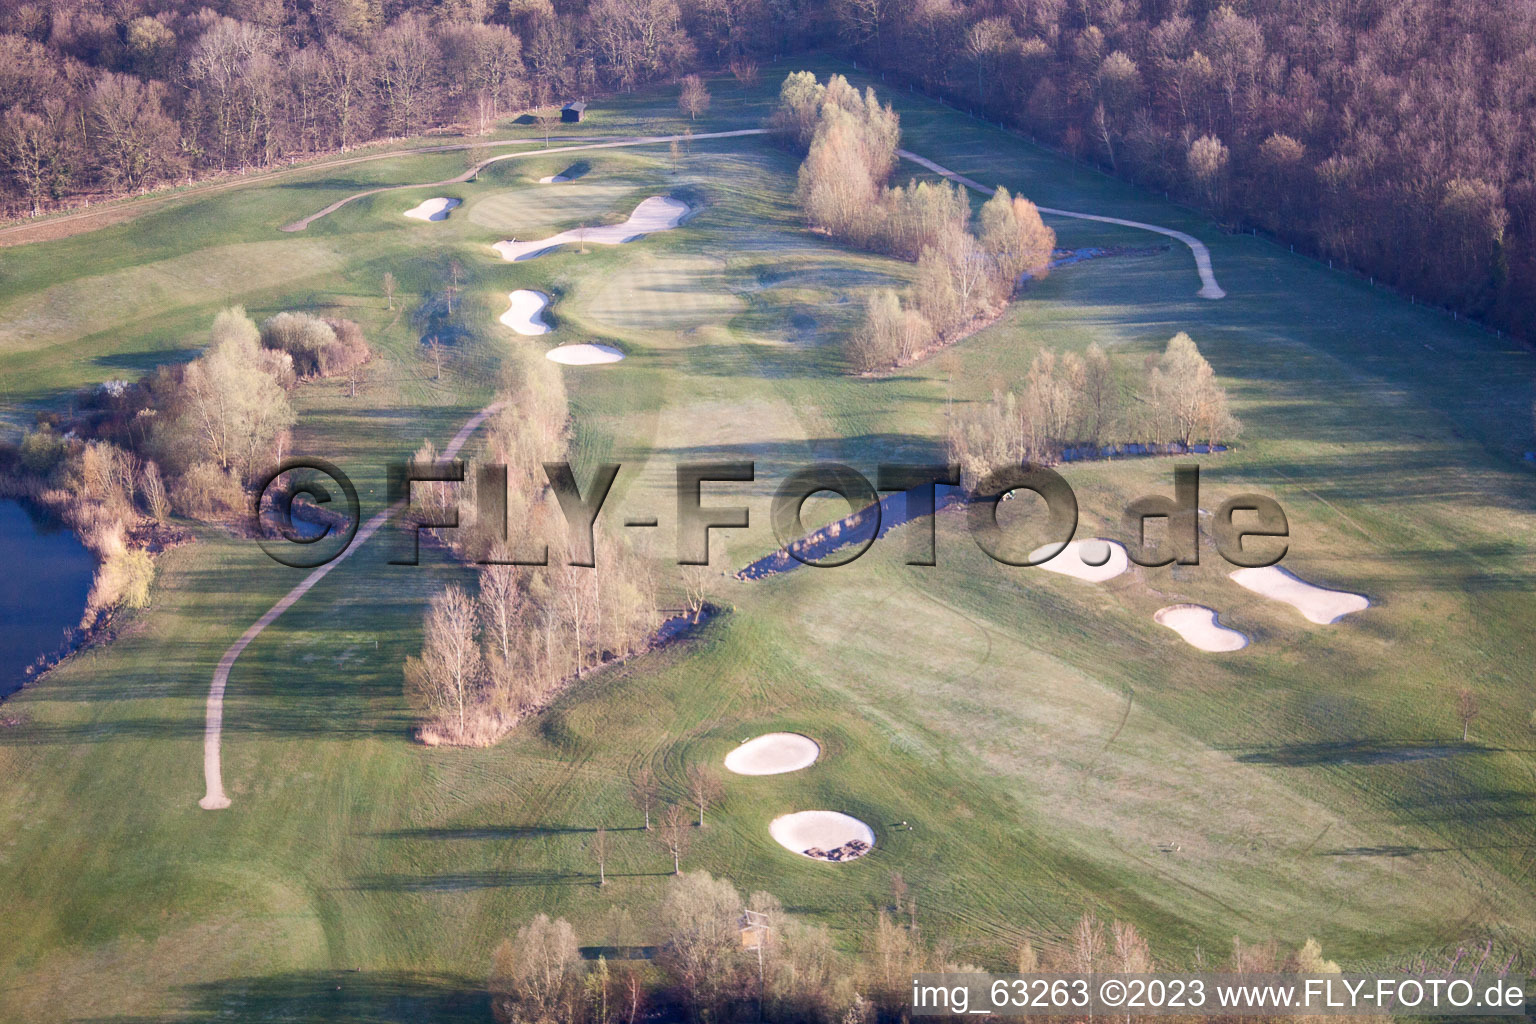 Essingen, Golfclub Dreihof im Bundesland Rheinland-Pfalz, Deutschland von einer Drohne aus